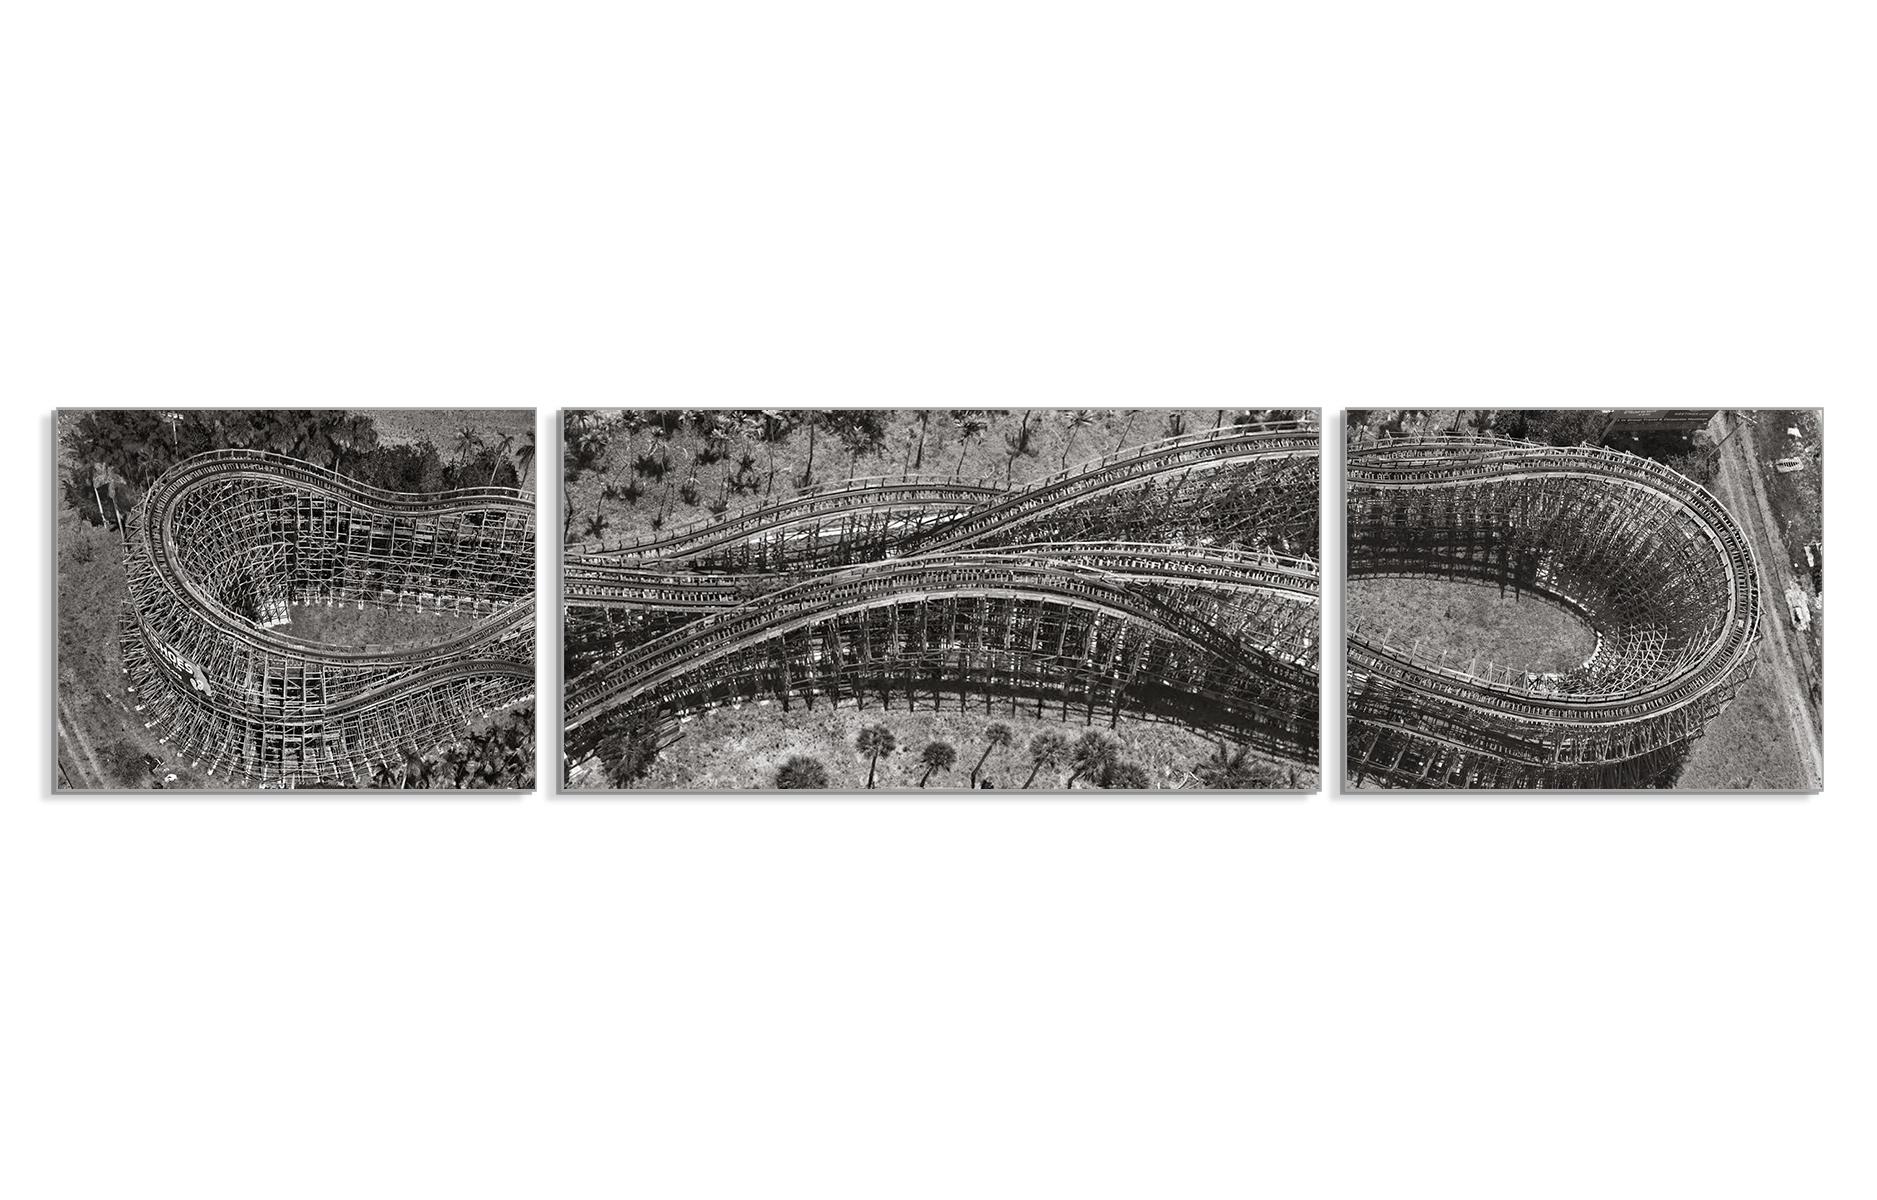 Achterbahn.  Luftbildfotografie Triptychon Schwarz-Weiß-Fotografie  